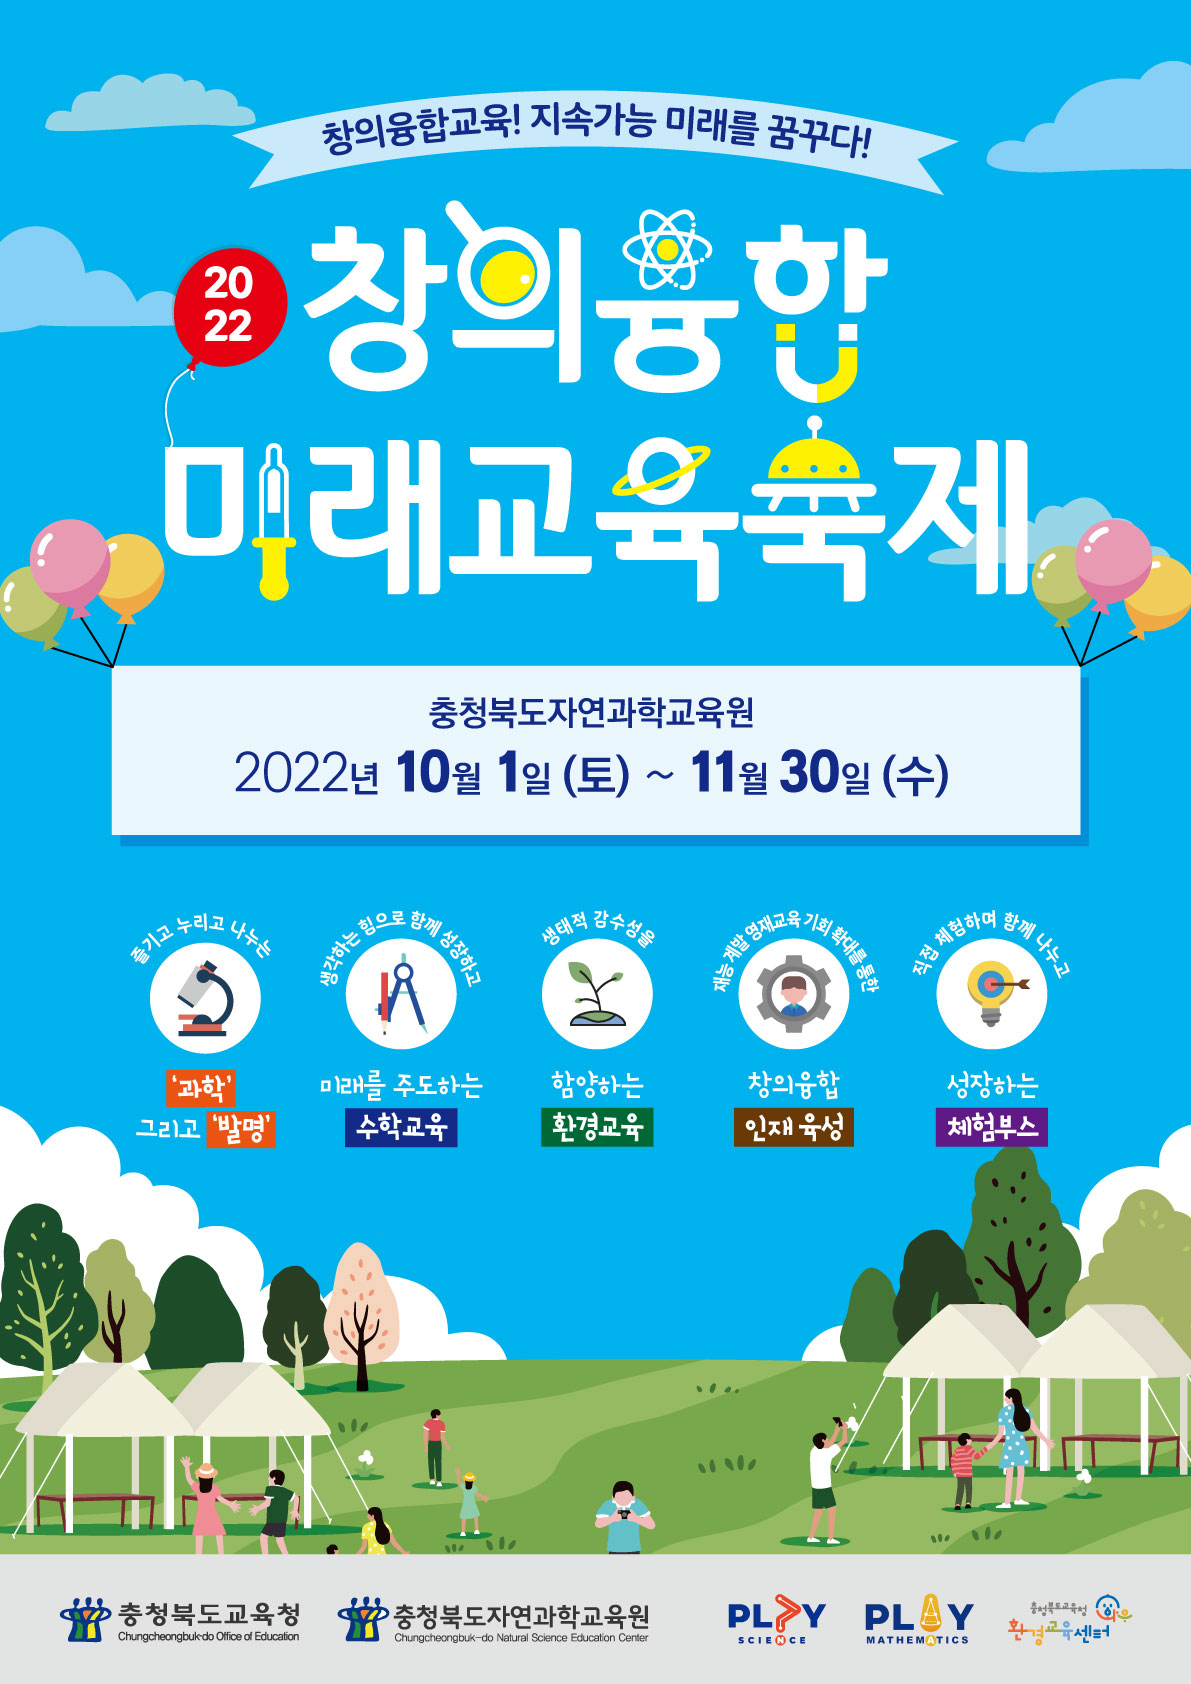 2022. 창의융합미래교육축제 홍보용 포스터